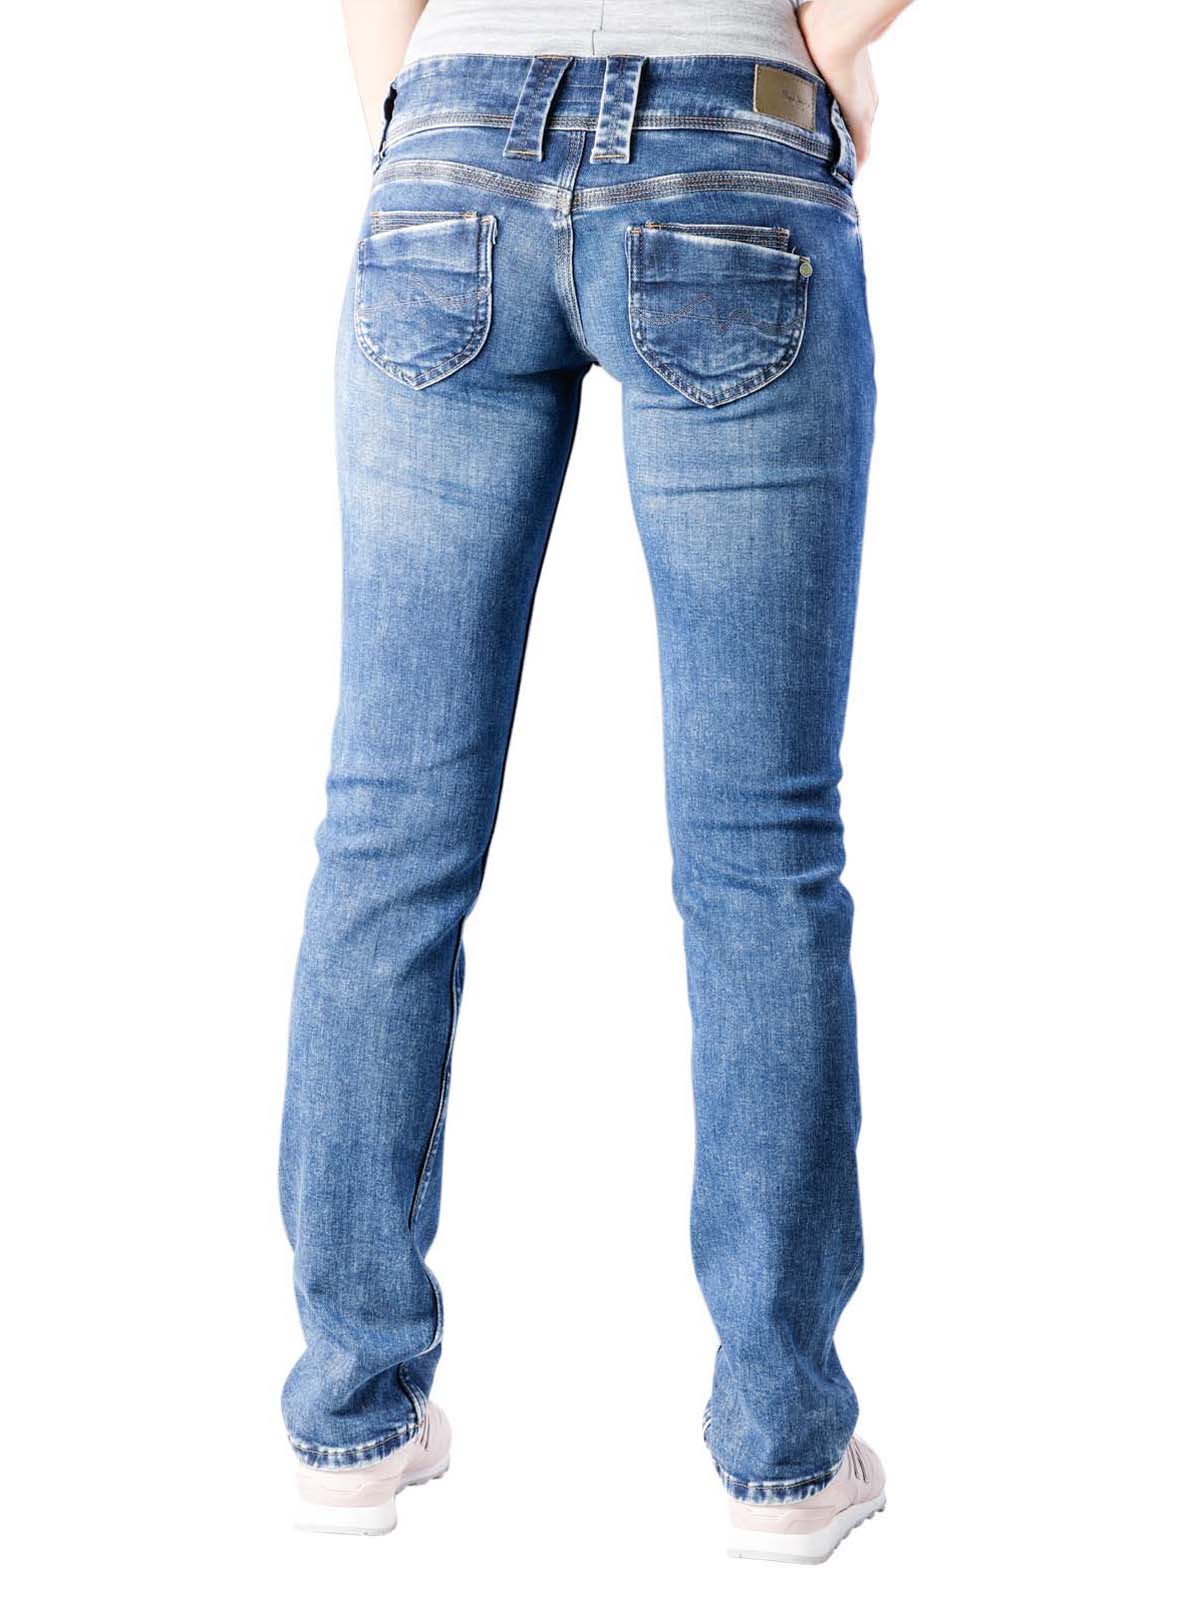 venus pepe jeans